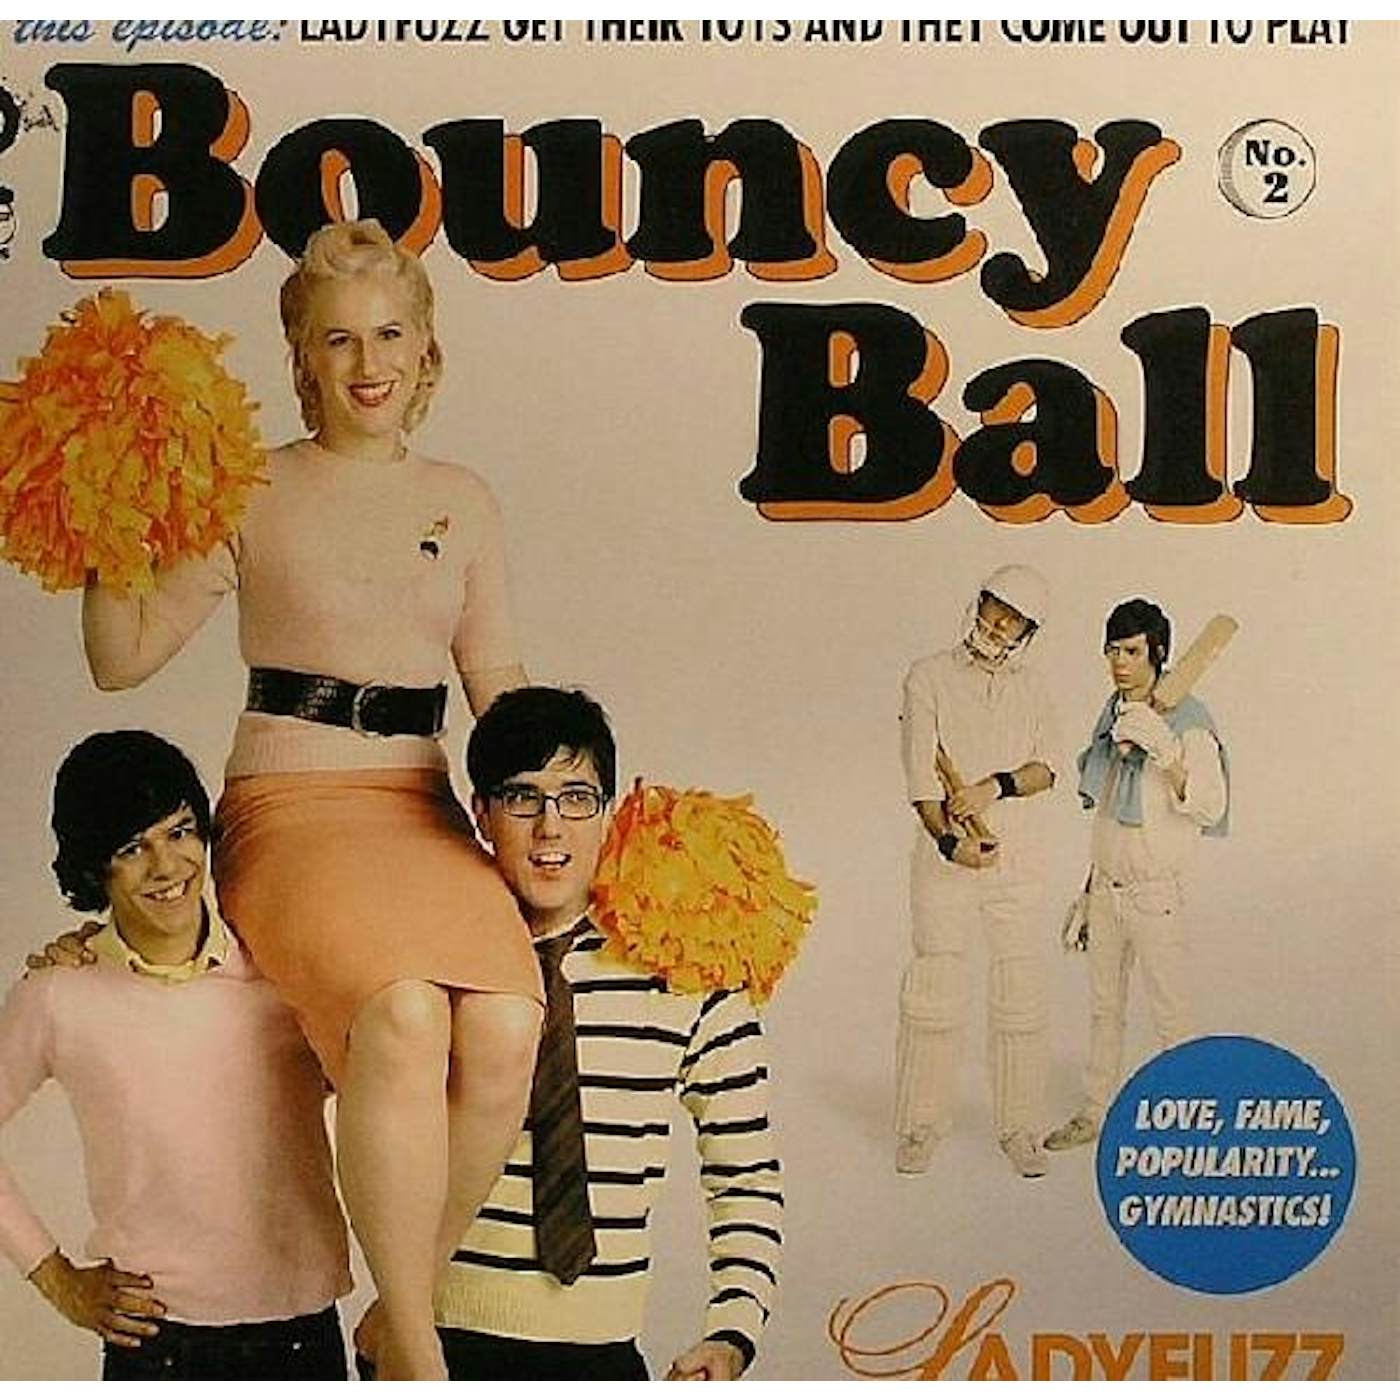 Ladyfuzz Bouncy Ball Vinyl Record